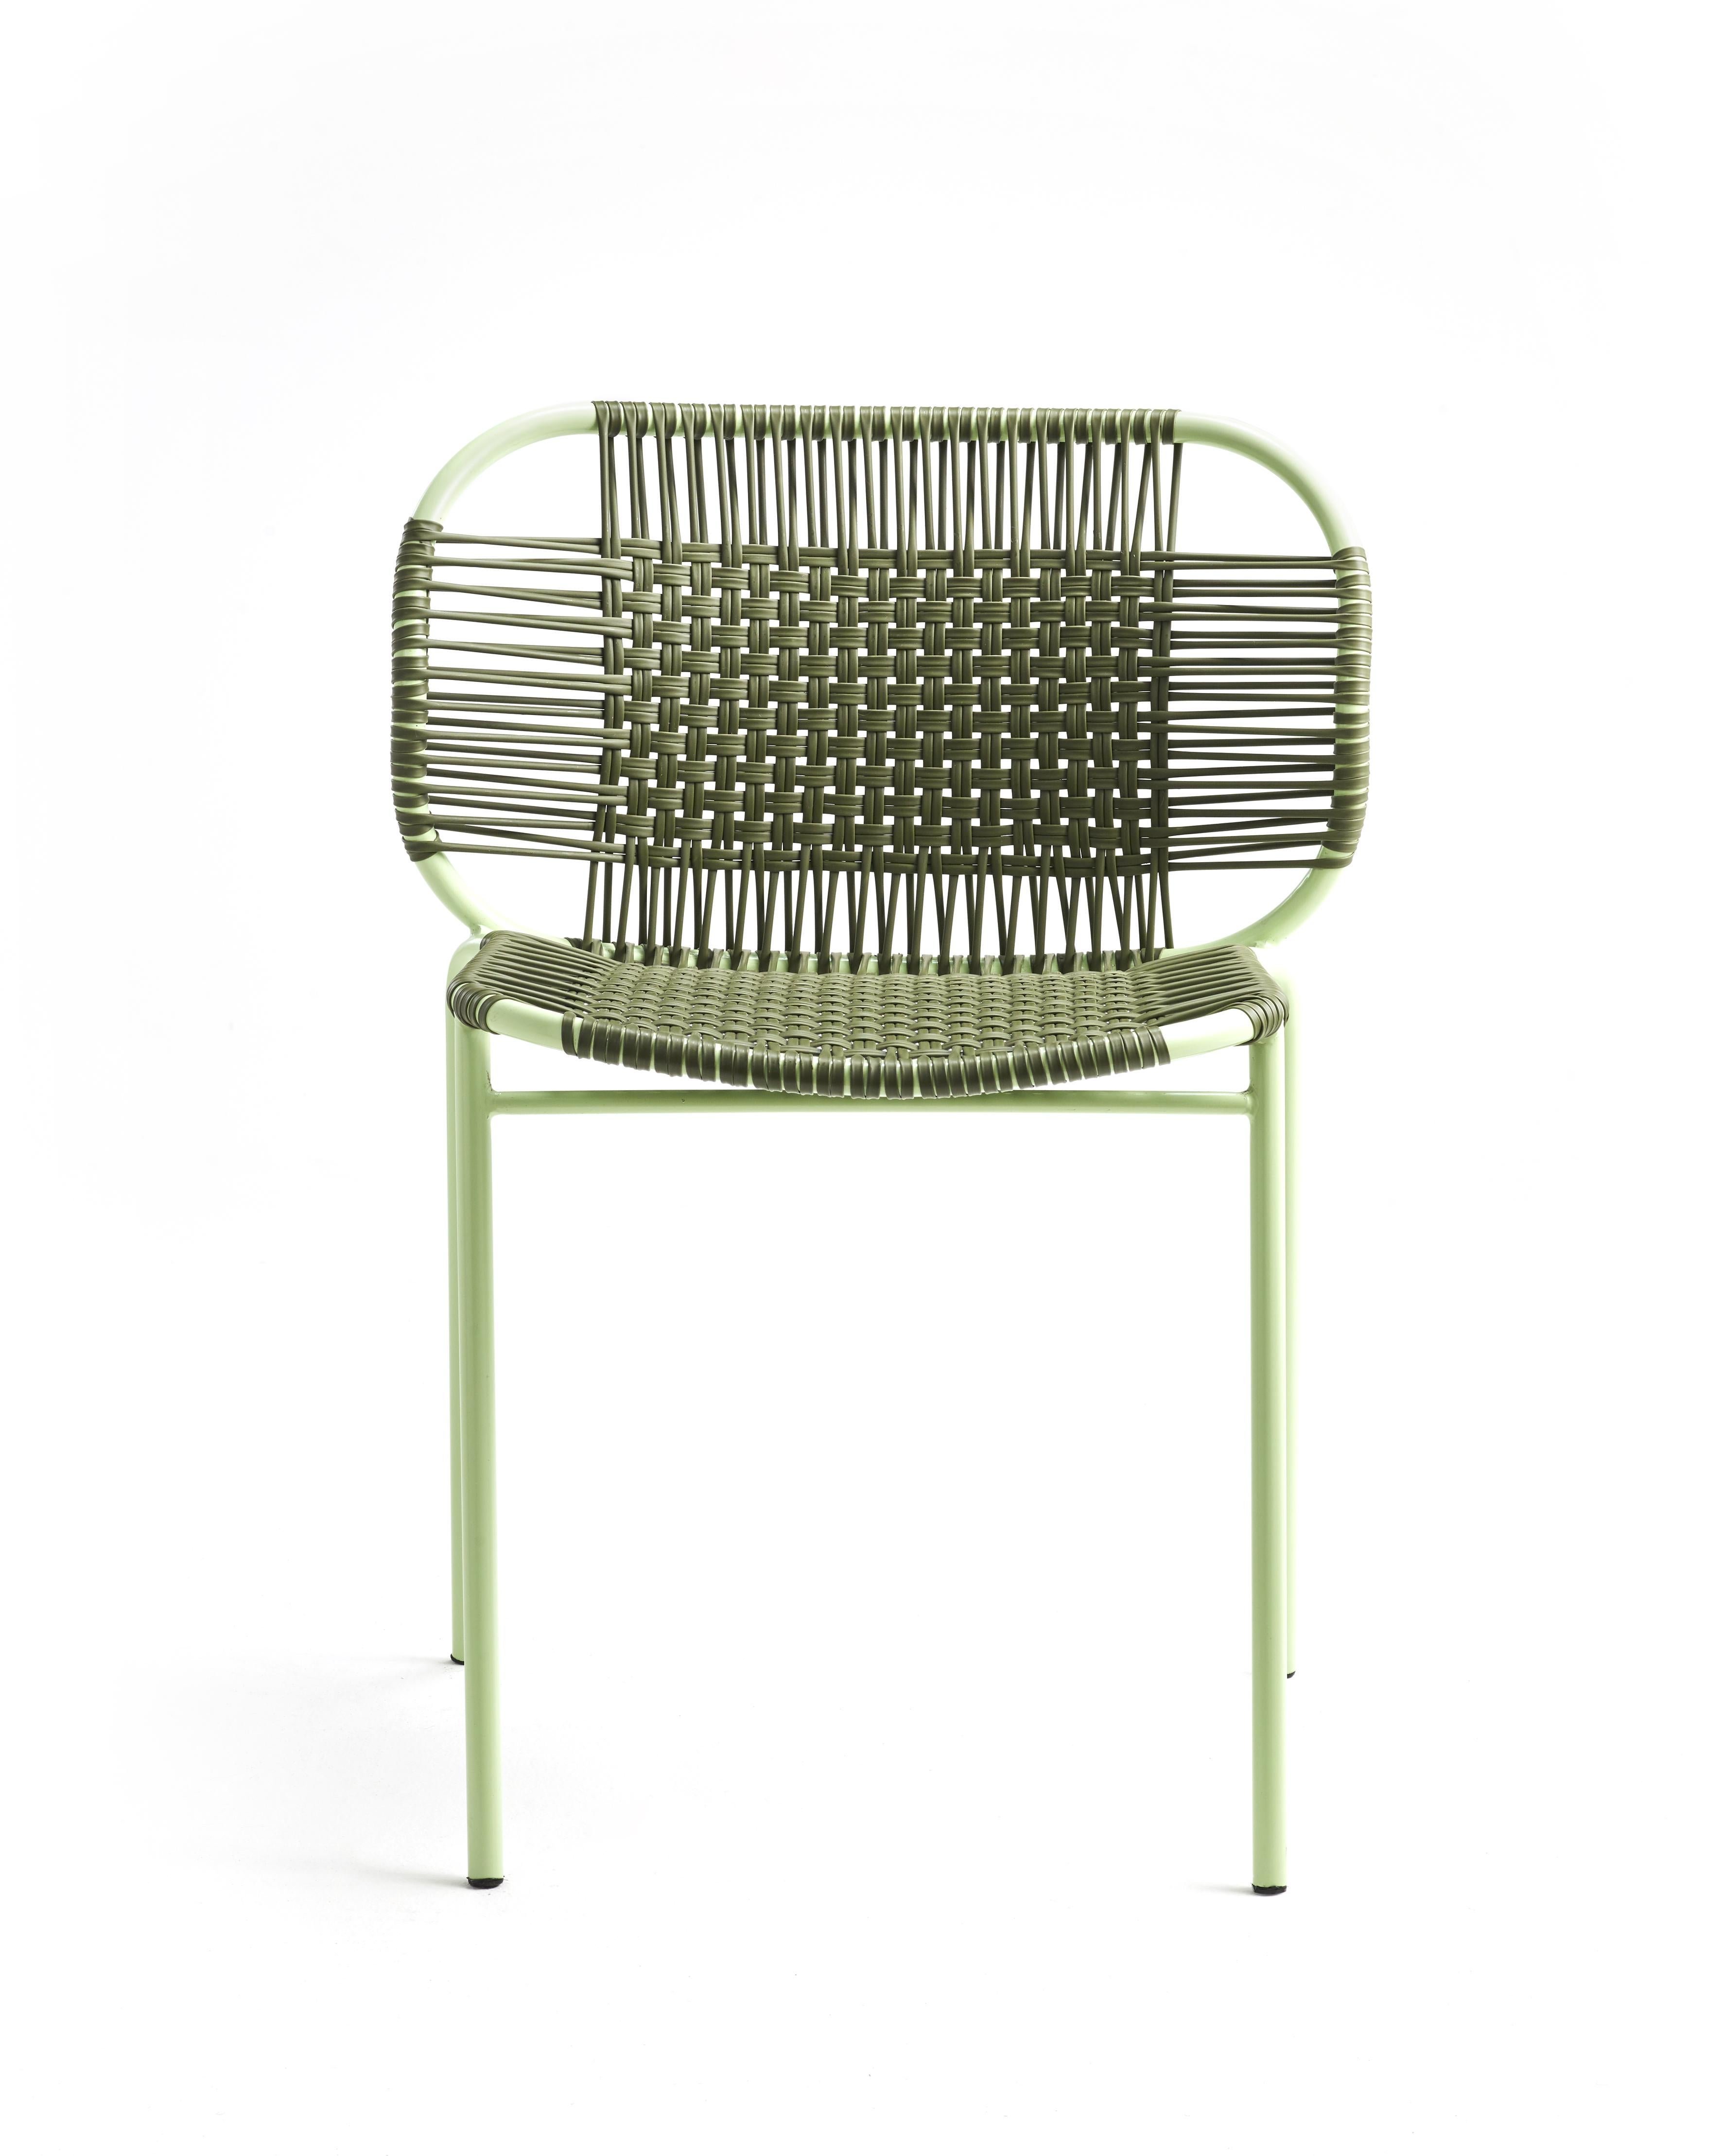 Lot de 4 chaises empilables Olive Cielo de Sebastian Herkner
Matériaux : Cordes en PVC, cadre en acier revêtu de poudre. 
Technique : Fabriqué à partir de plastique recyclé et tissé par des artisans locaux à Cartagena, en Colombie. 
Dimensions :